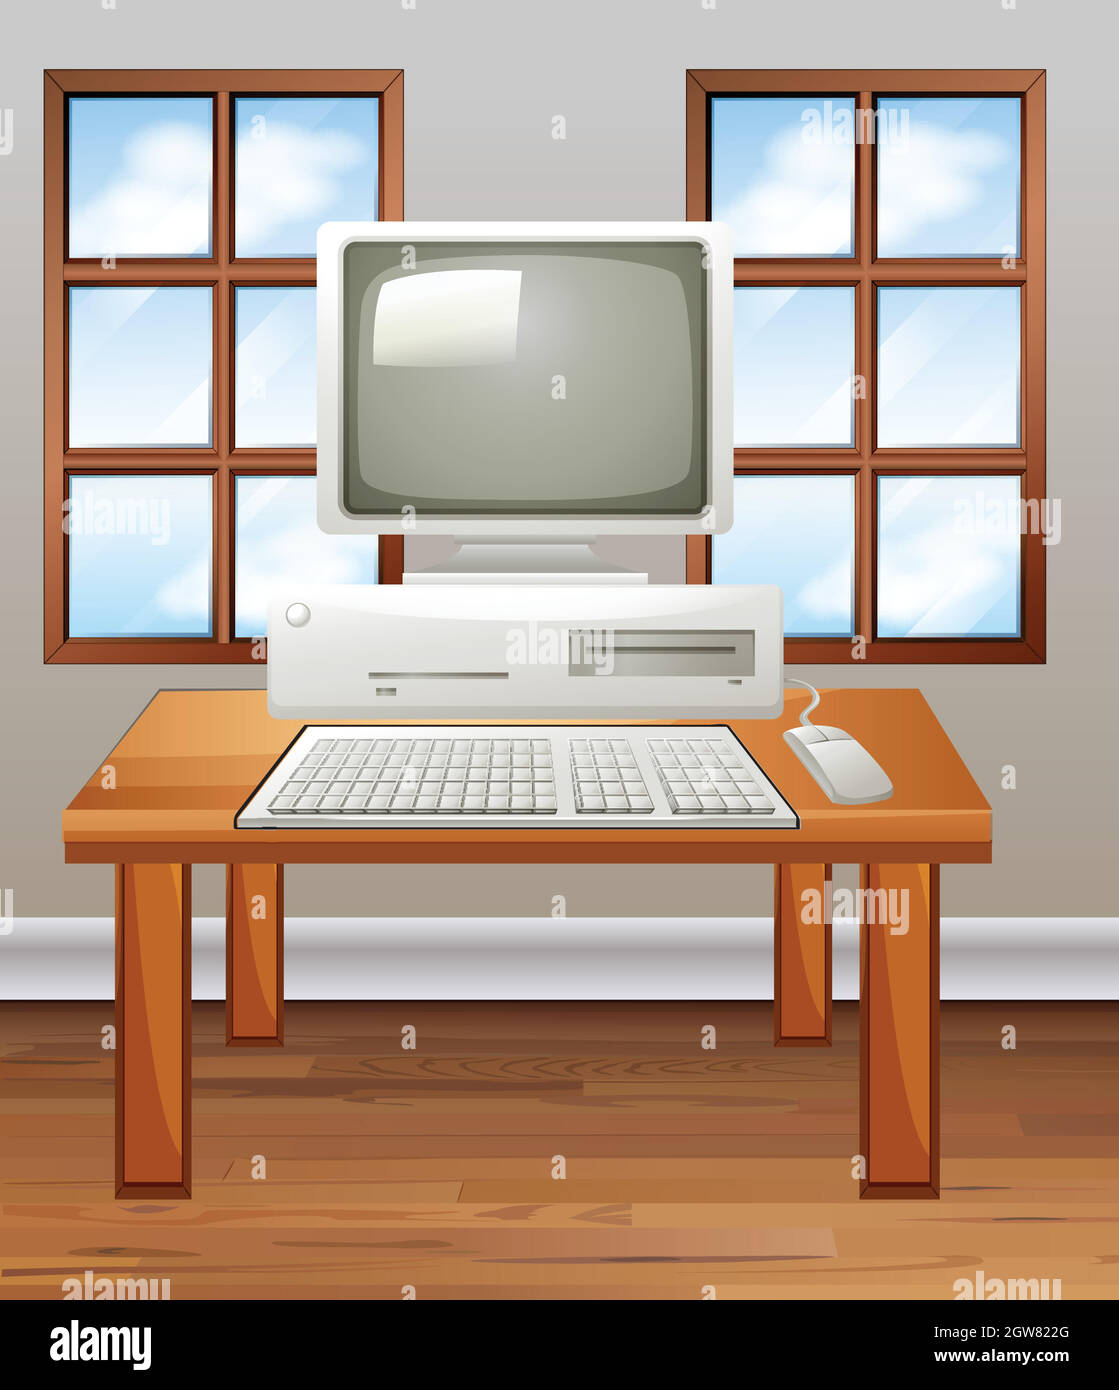 Alter Computer im Zimmer Stock Vektor